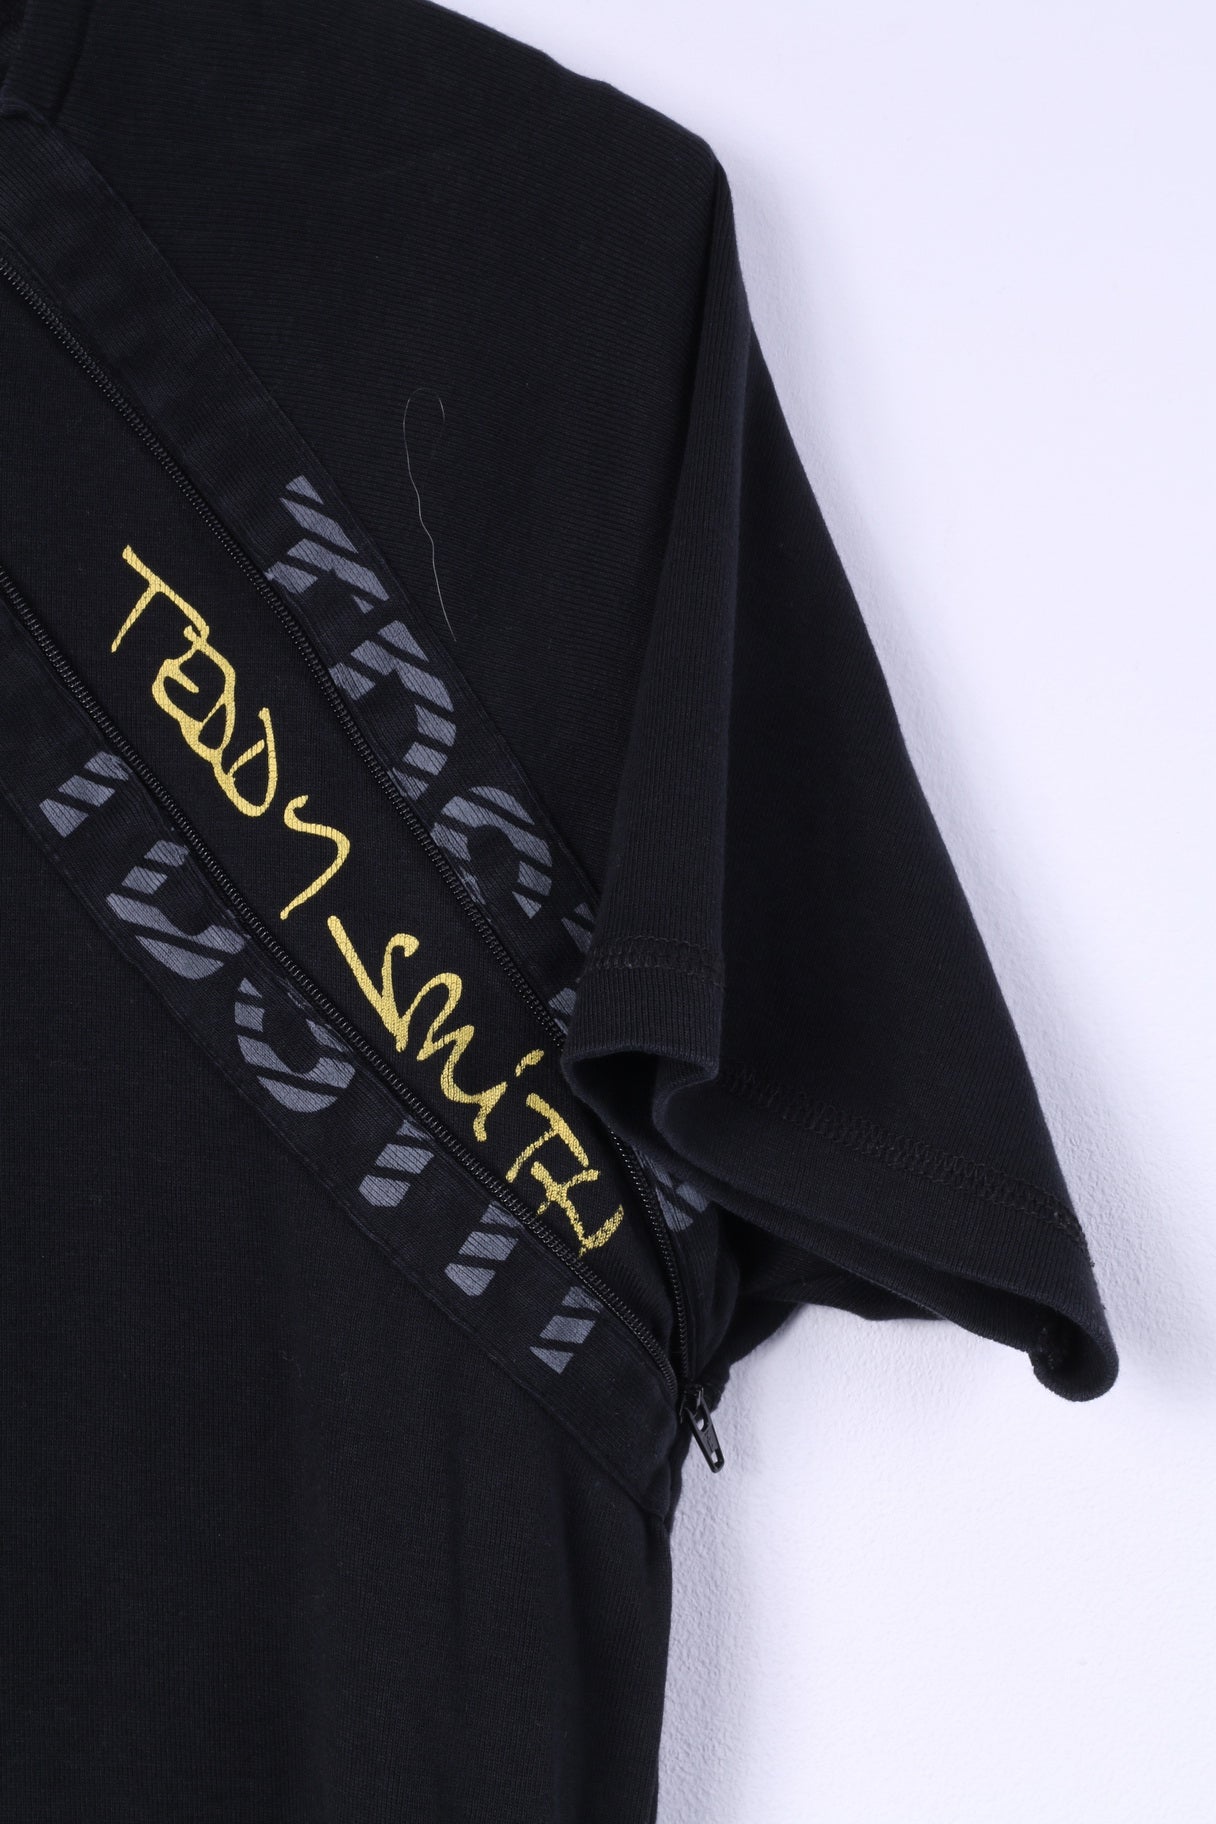 T-shirt da uomo Teddy Smith S nera con zip dettagliata in cotone nero